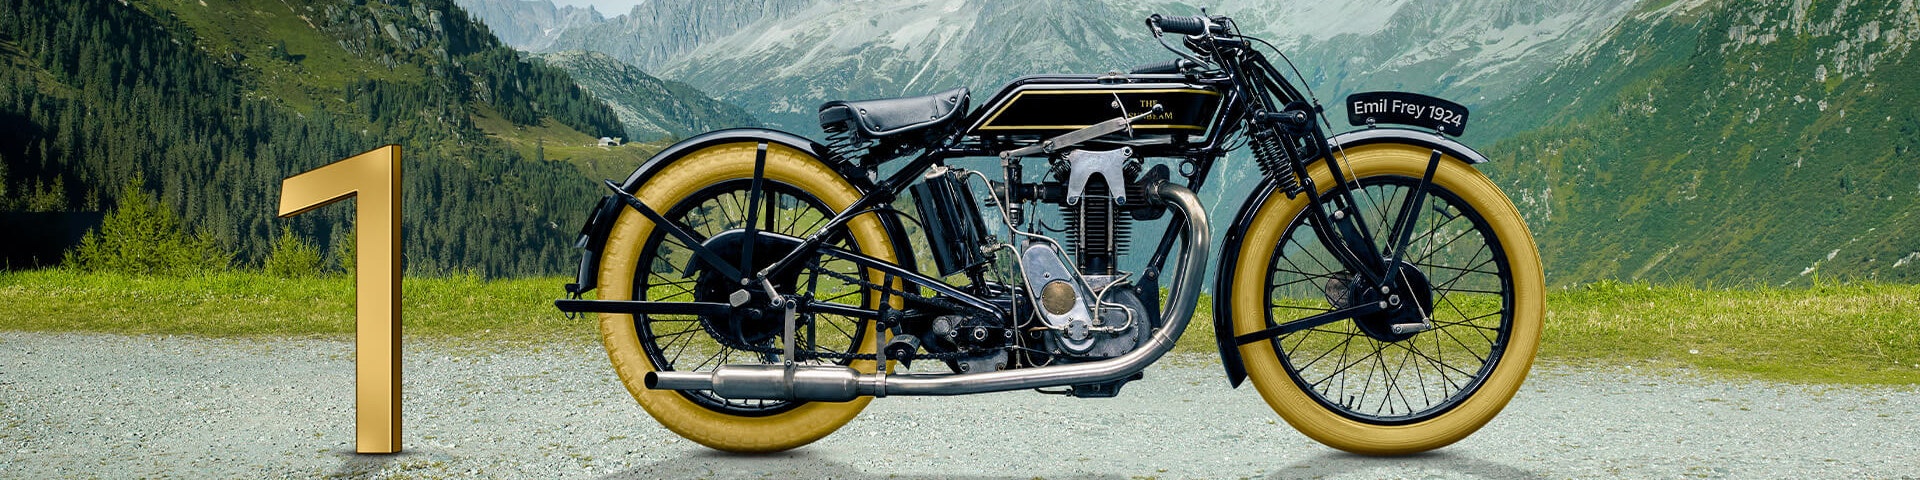 100 Jahre Emil Frey Motorrad